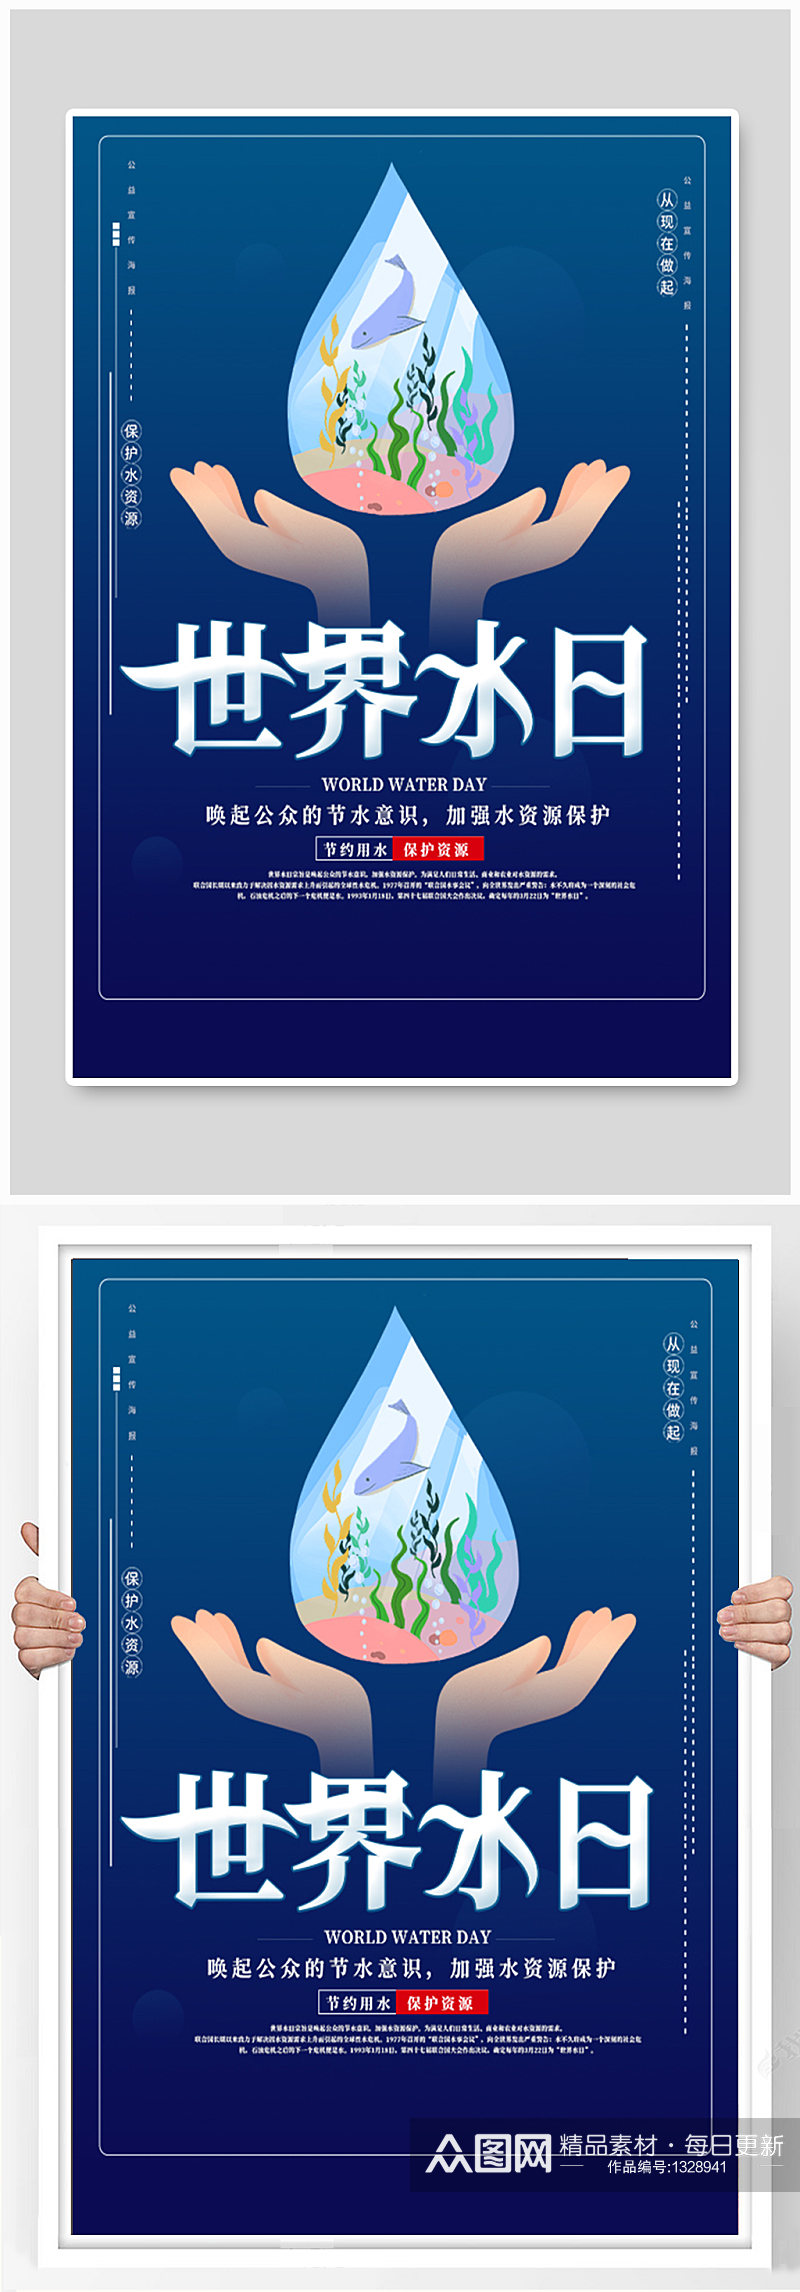 中国水日保护水资源创意海报素材